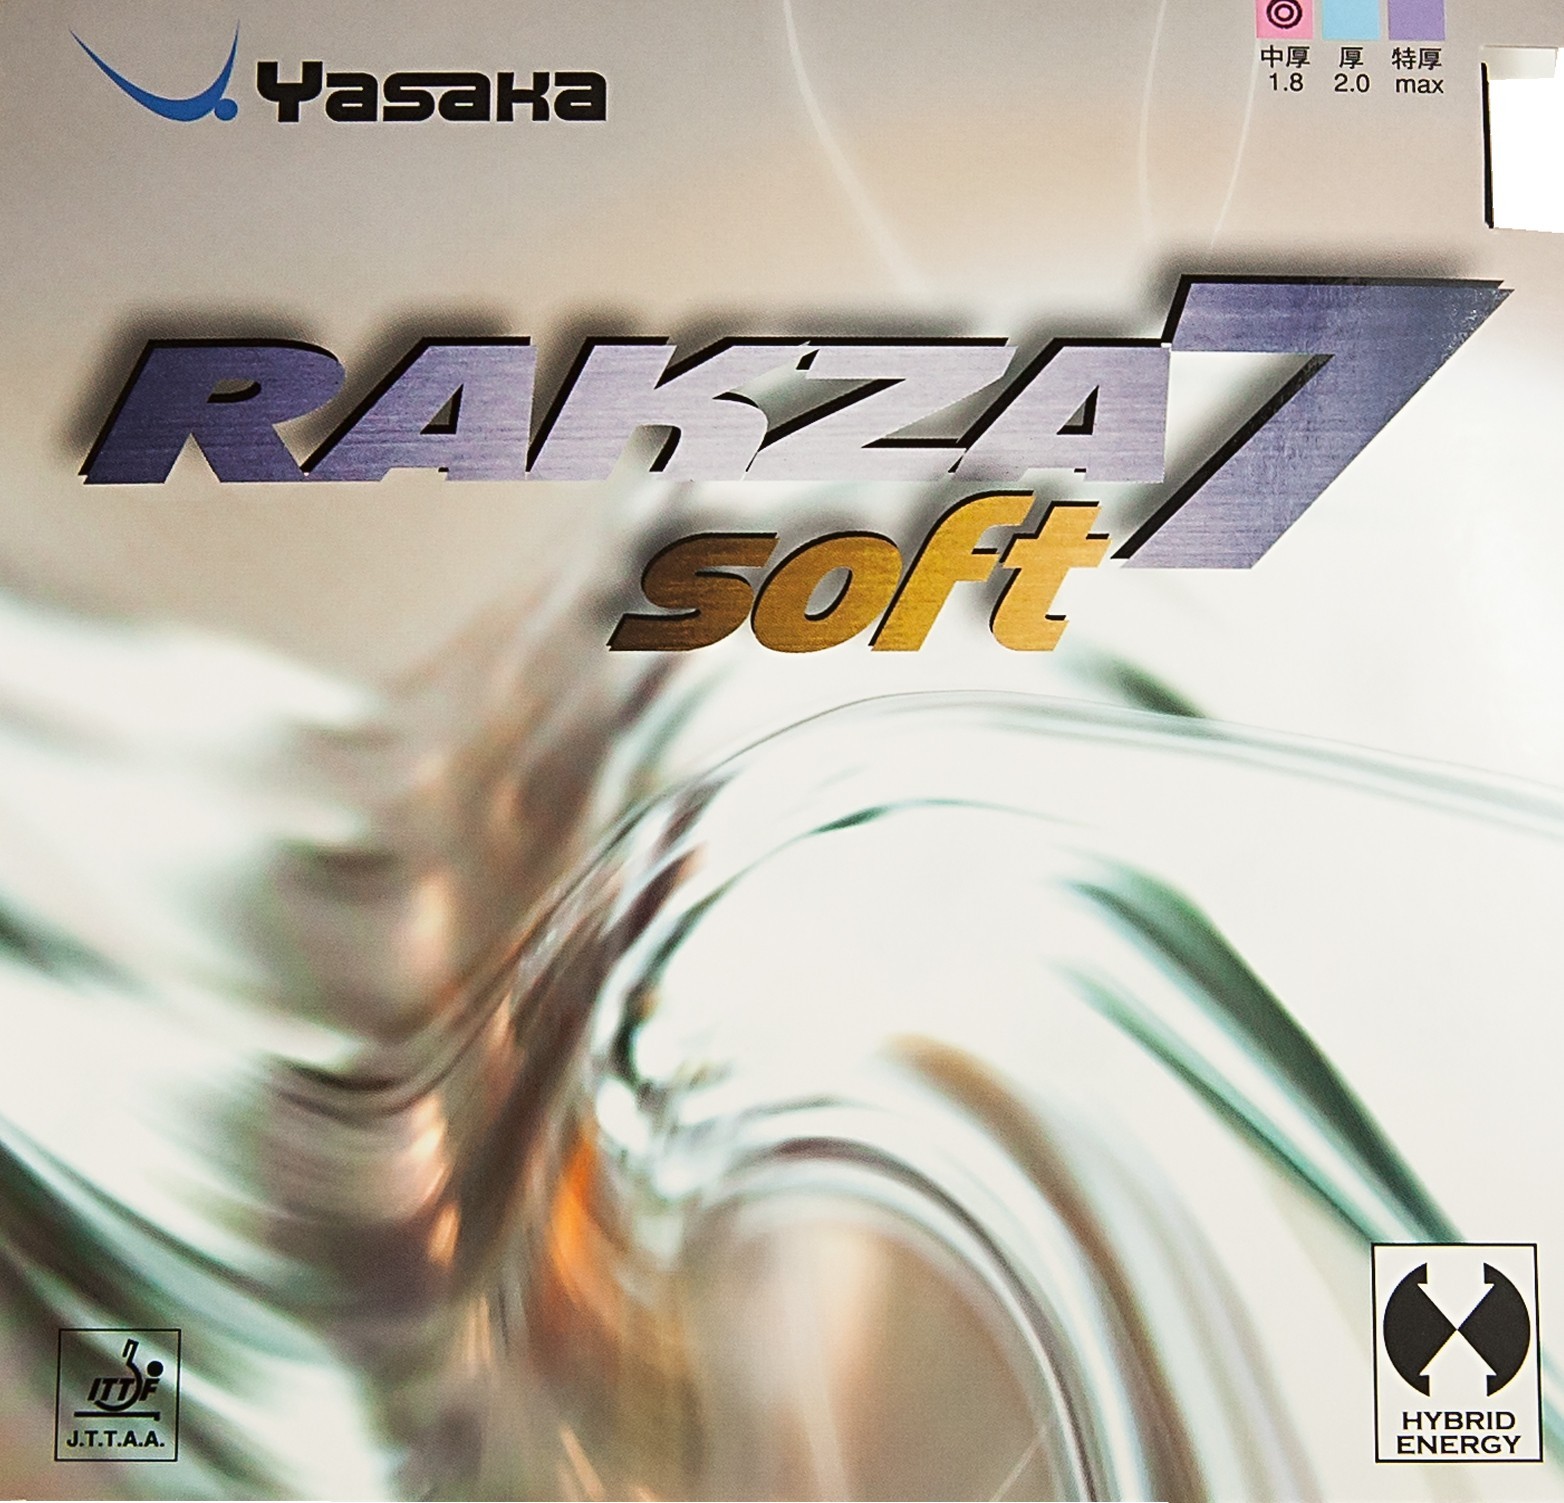 Yasaka - Rakza 7 Soft Barva: Červená, Tloušťka houby: 1,8